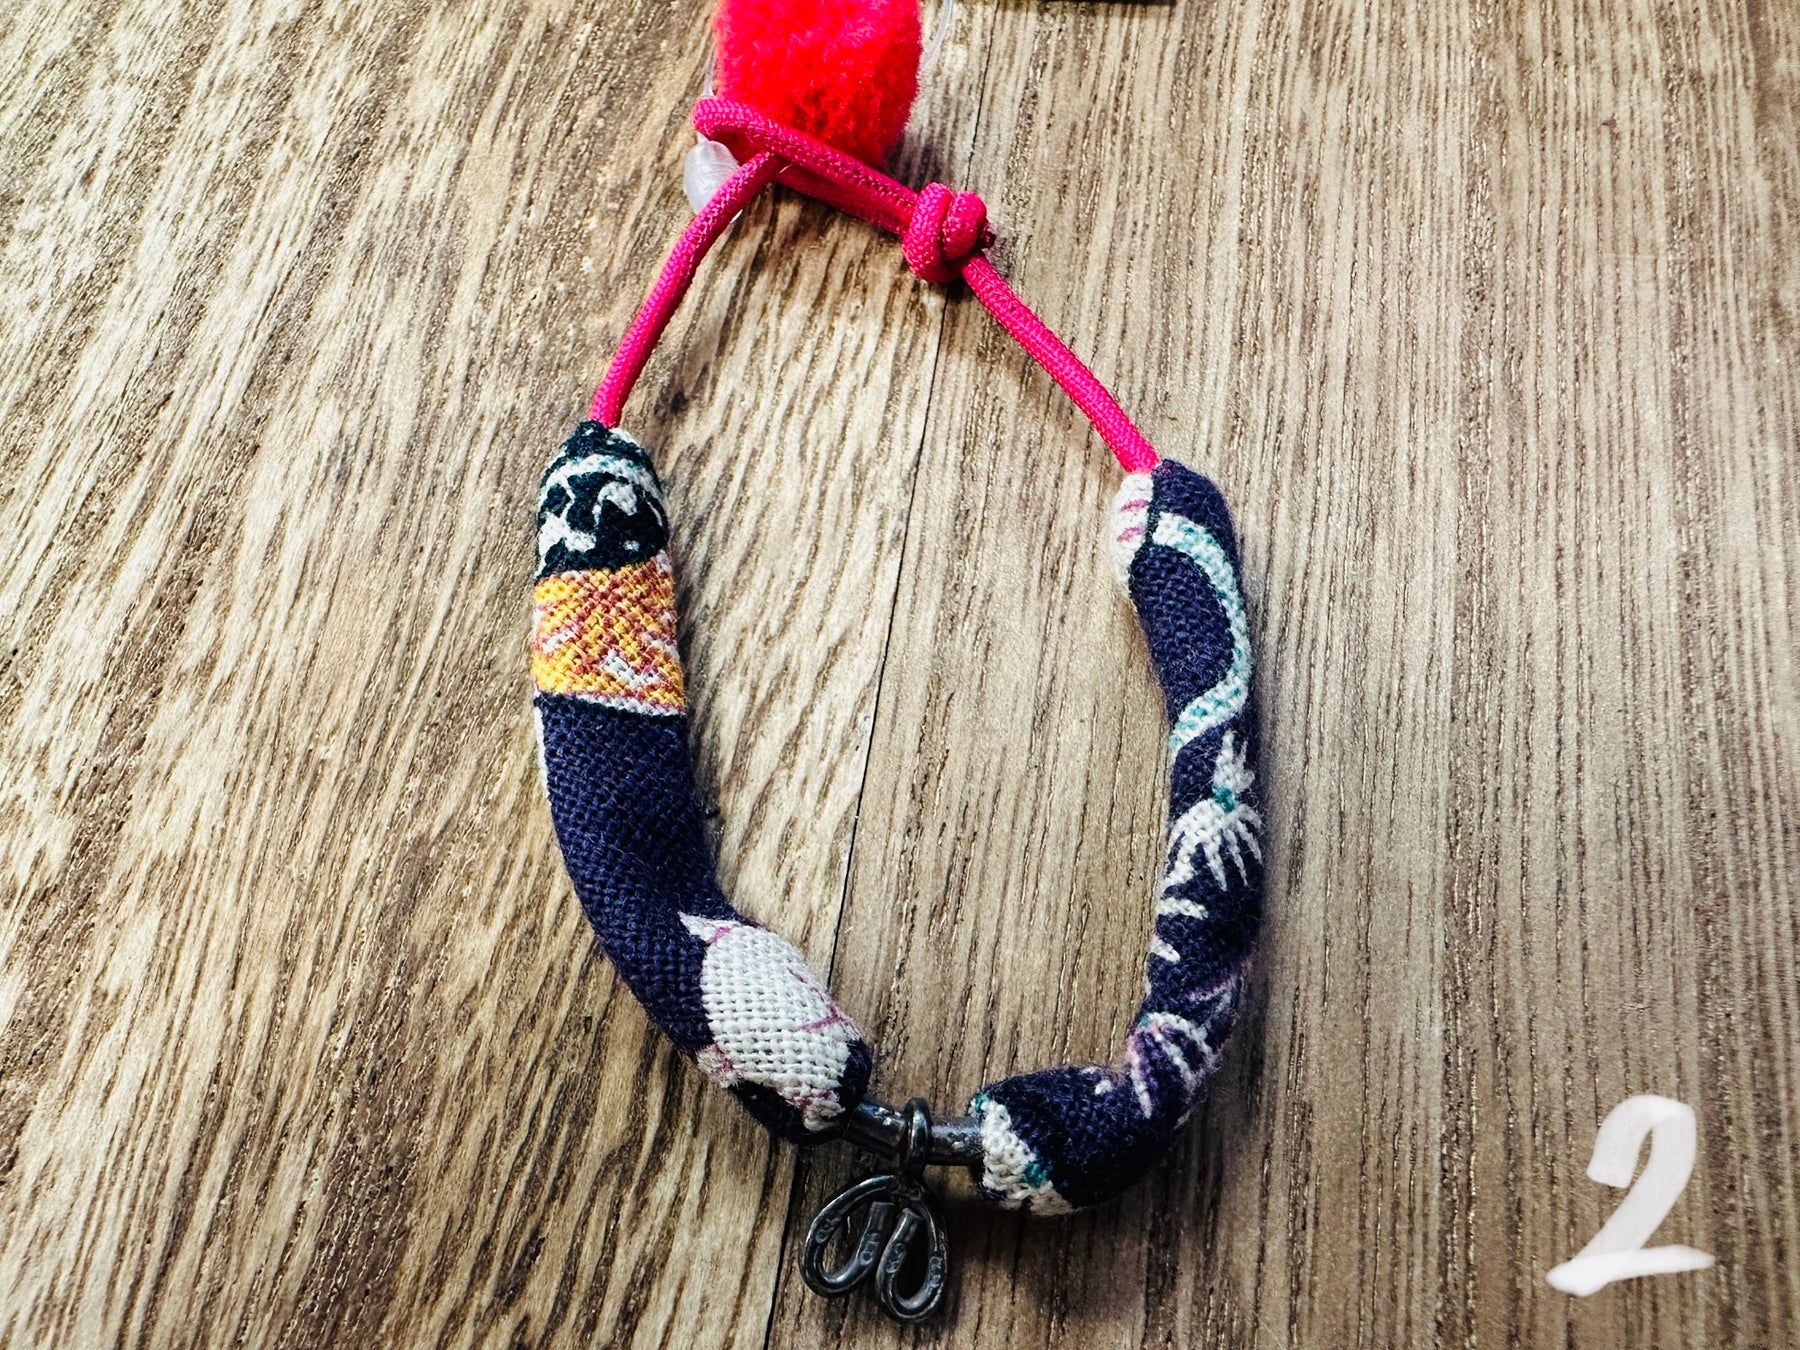 JE260 Traditional double sliding knot bracelet – Just Elephant